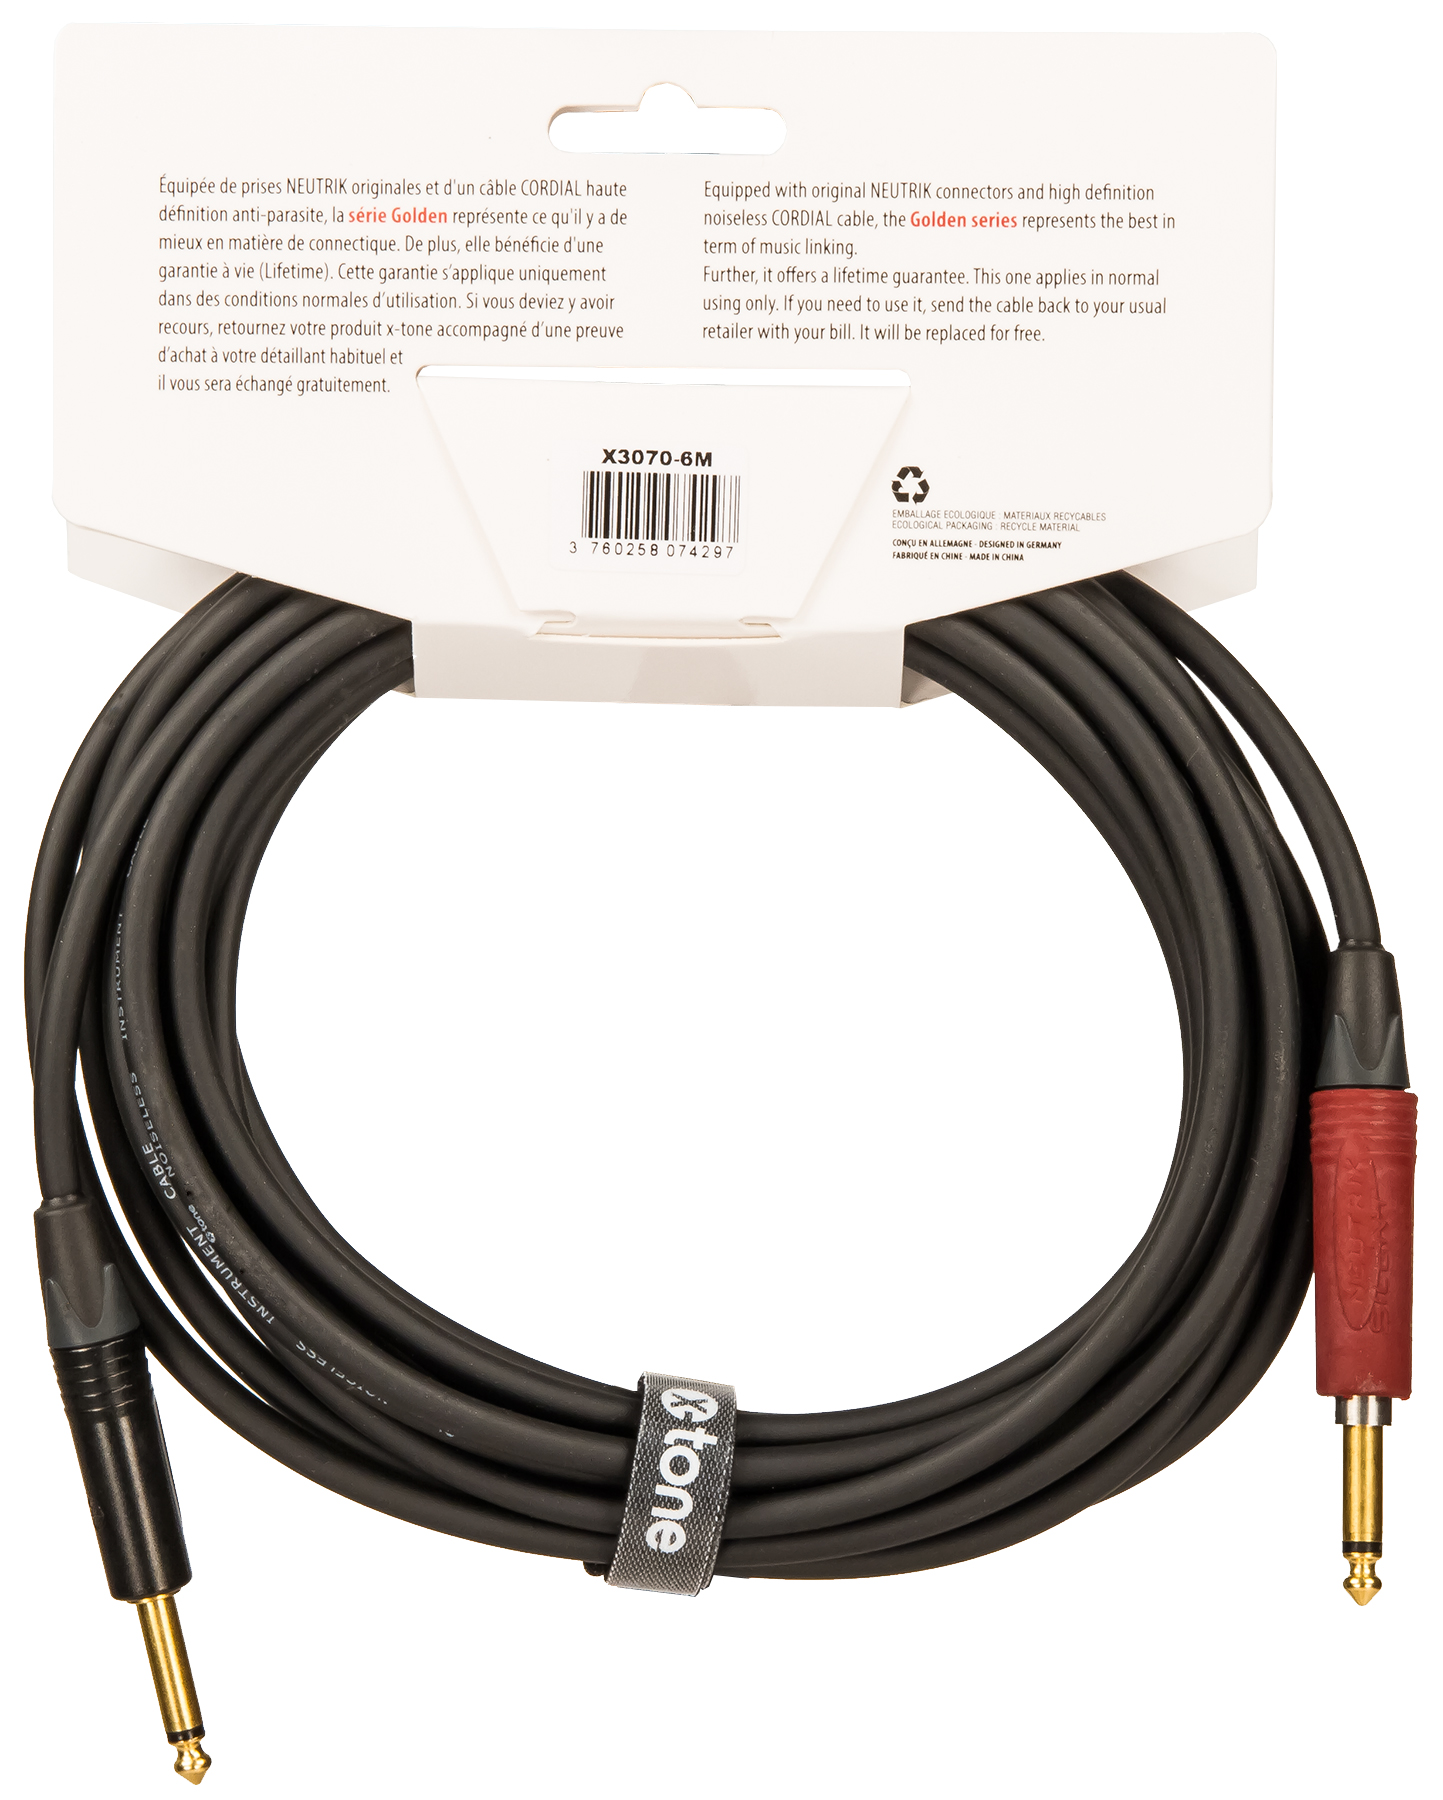 X-tone X3070-6m Instrument Cable Golden Neutrik Silent Droit/droit 6m - Kabel - Variation 1